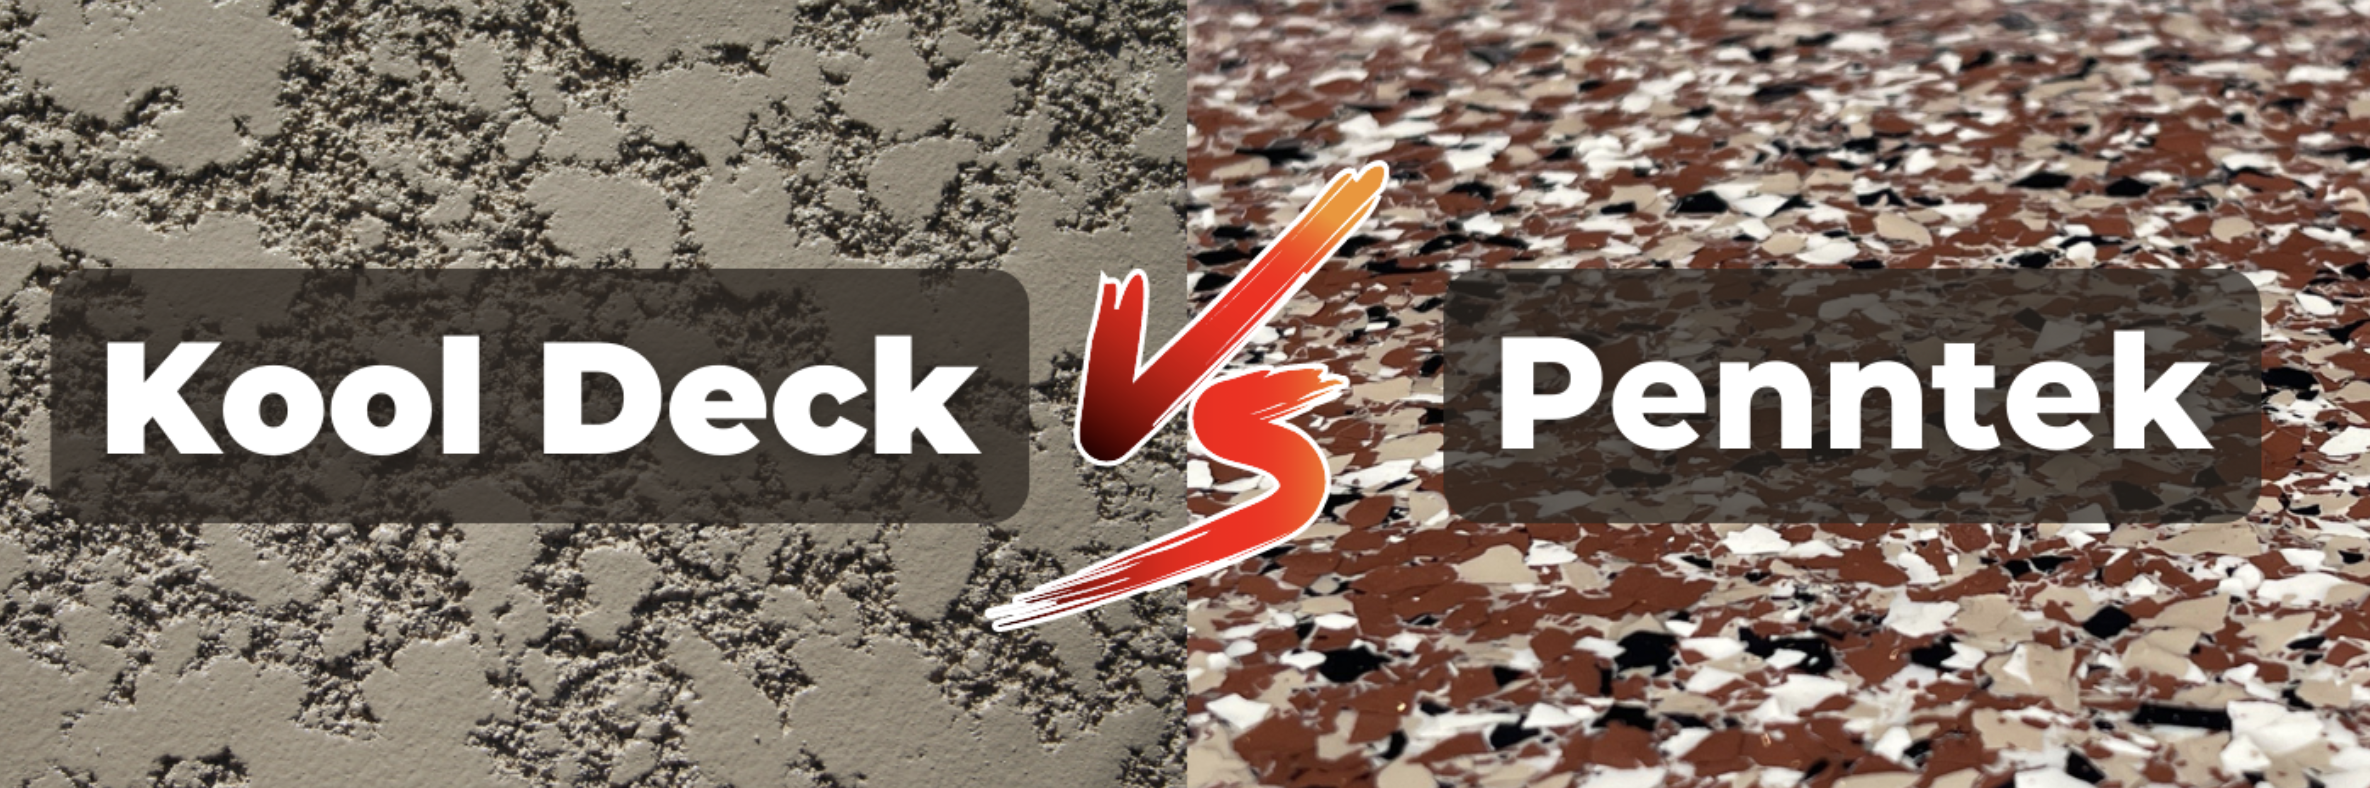 [VIDEO] Kool Deck vs. Penntek Industrial Coatings